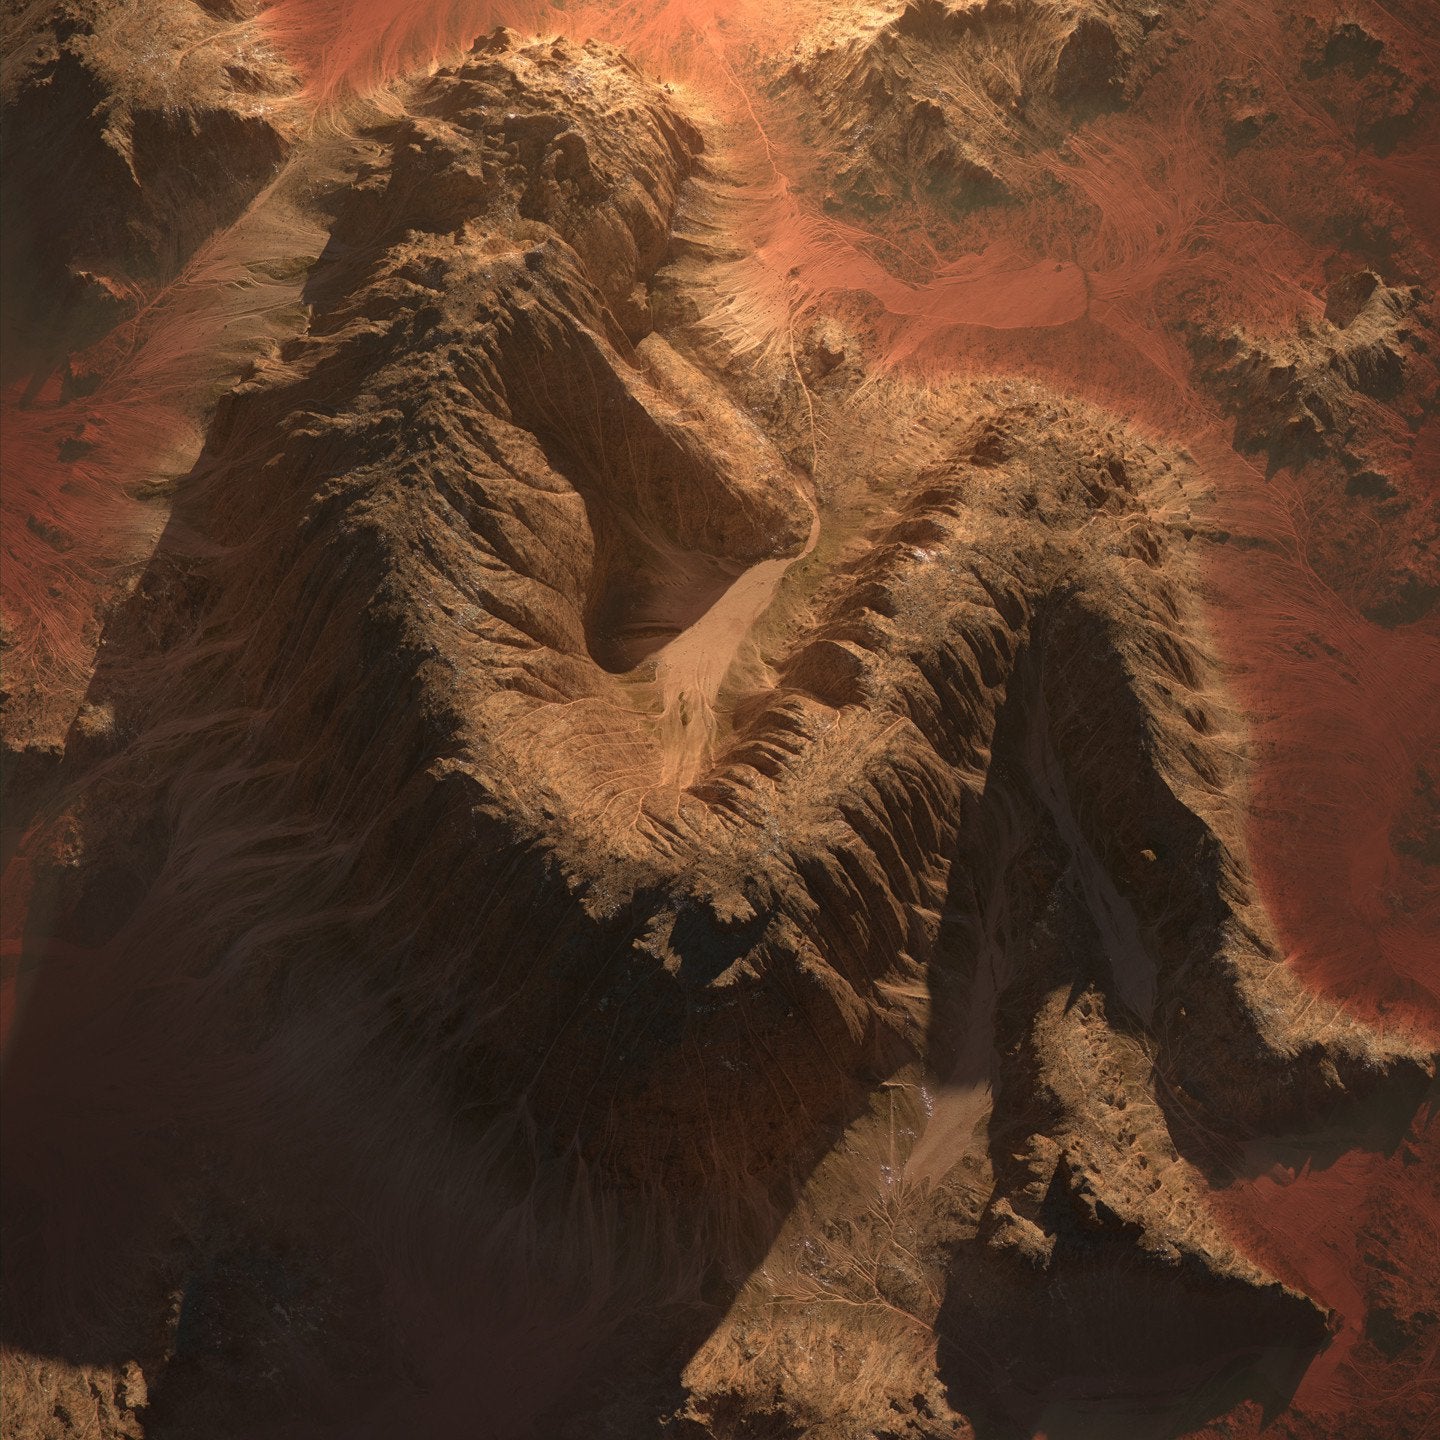 General 1440x1440 artwork digital art desert mountains humanoid lying on side